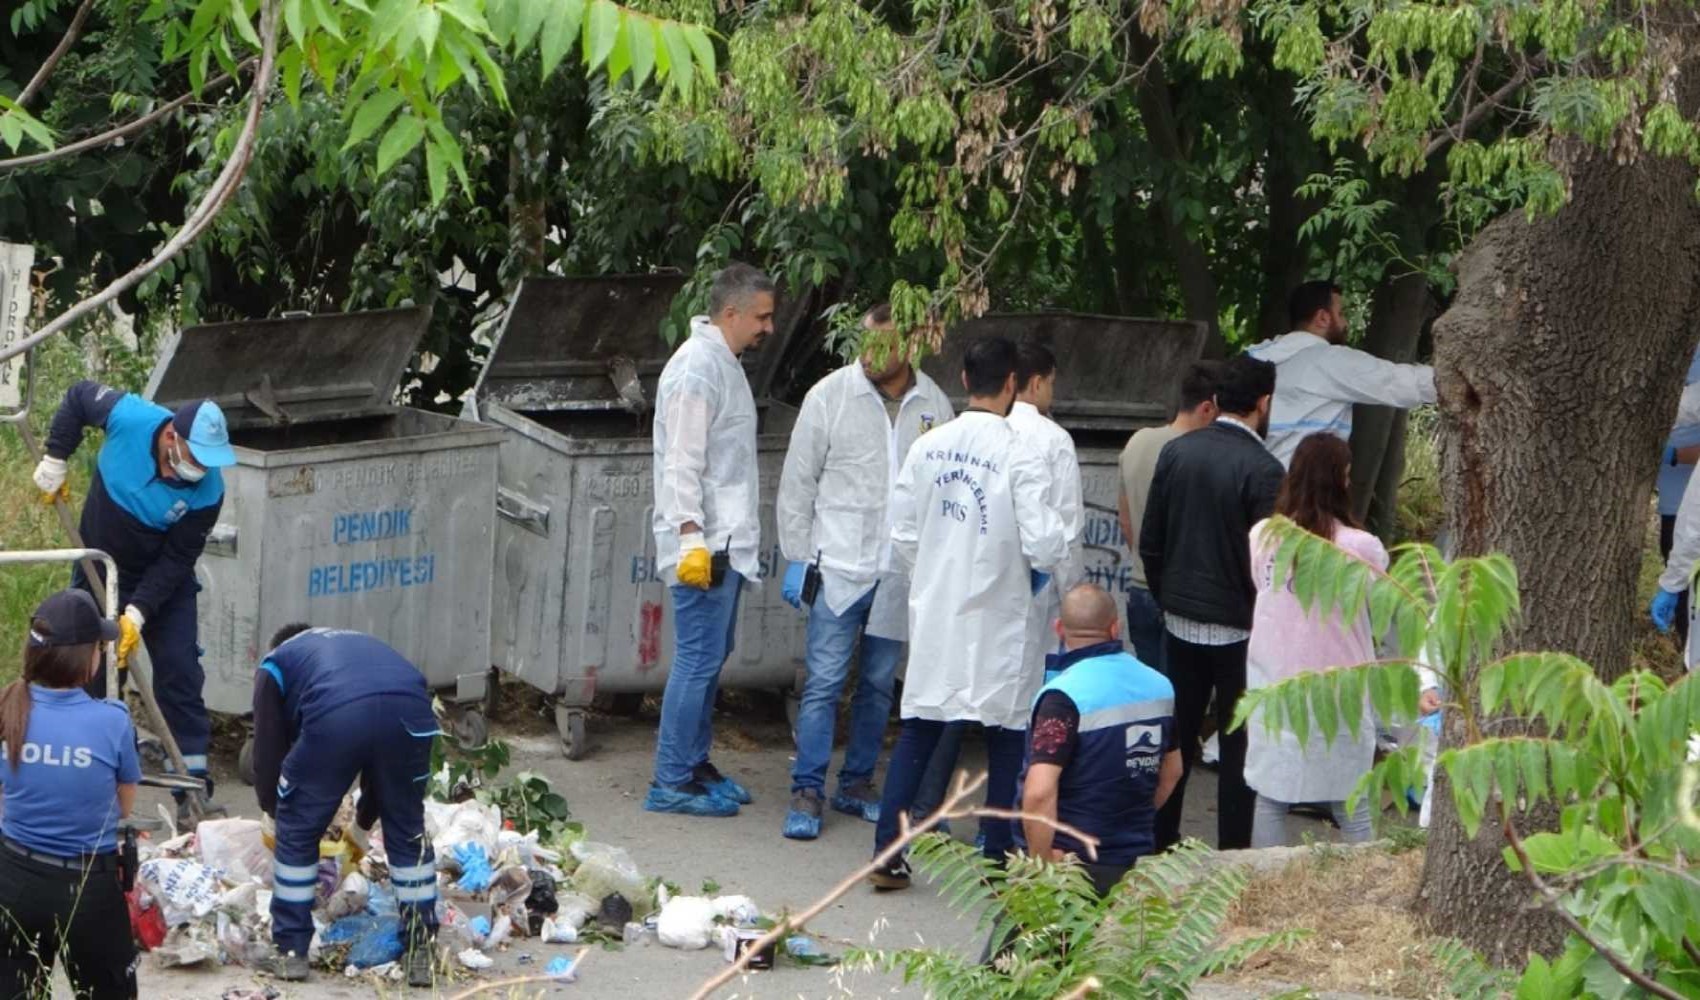 Pendik'te korkunç olay: İki ayrı çöp konteynerinde parçalanmış erkek cesedi bulundu